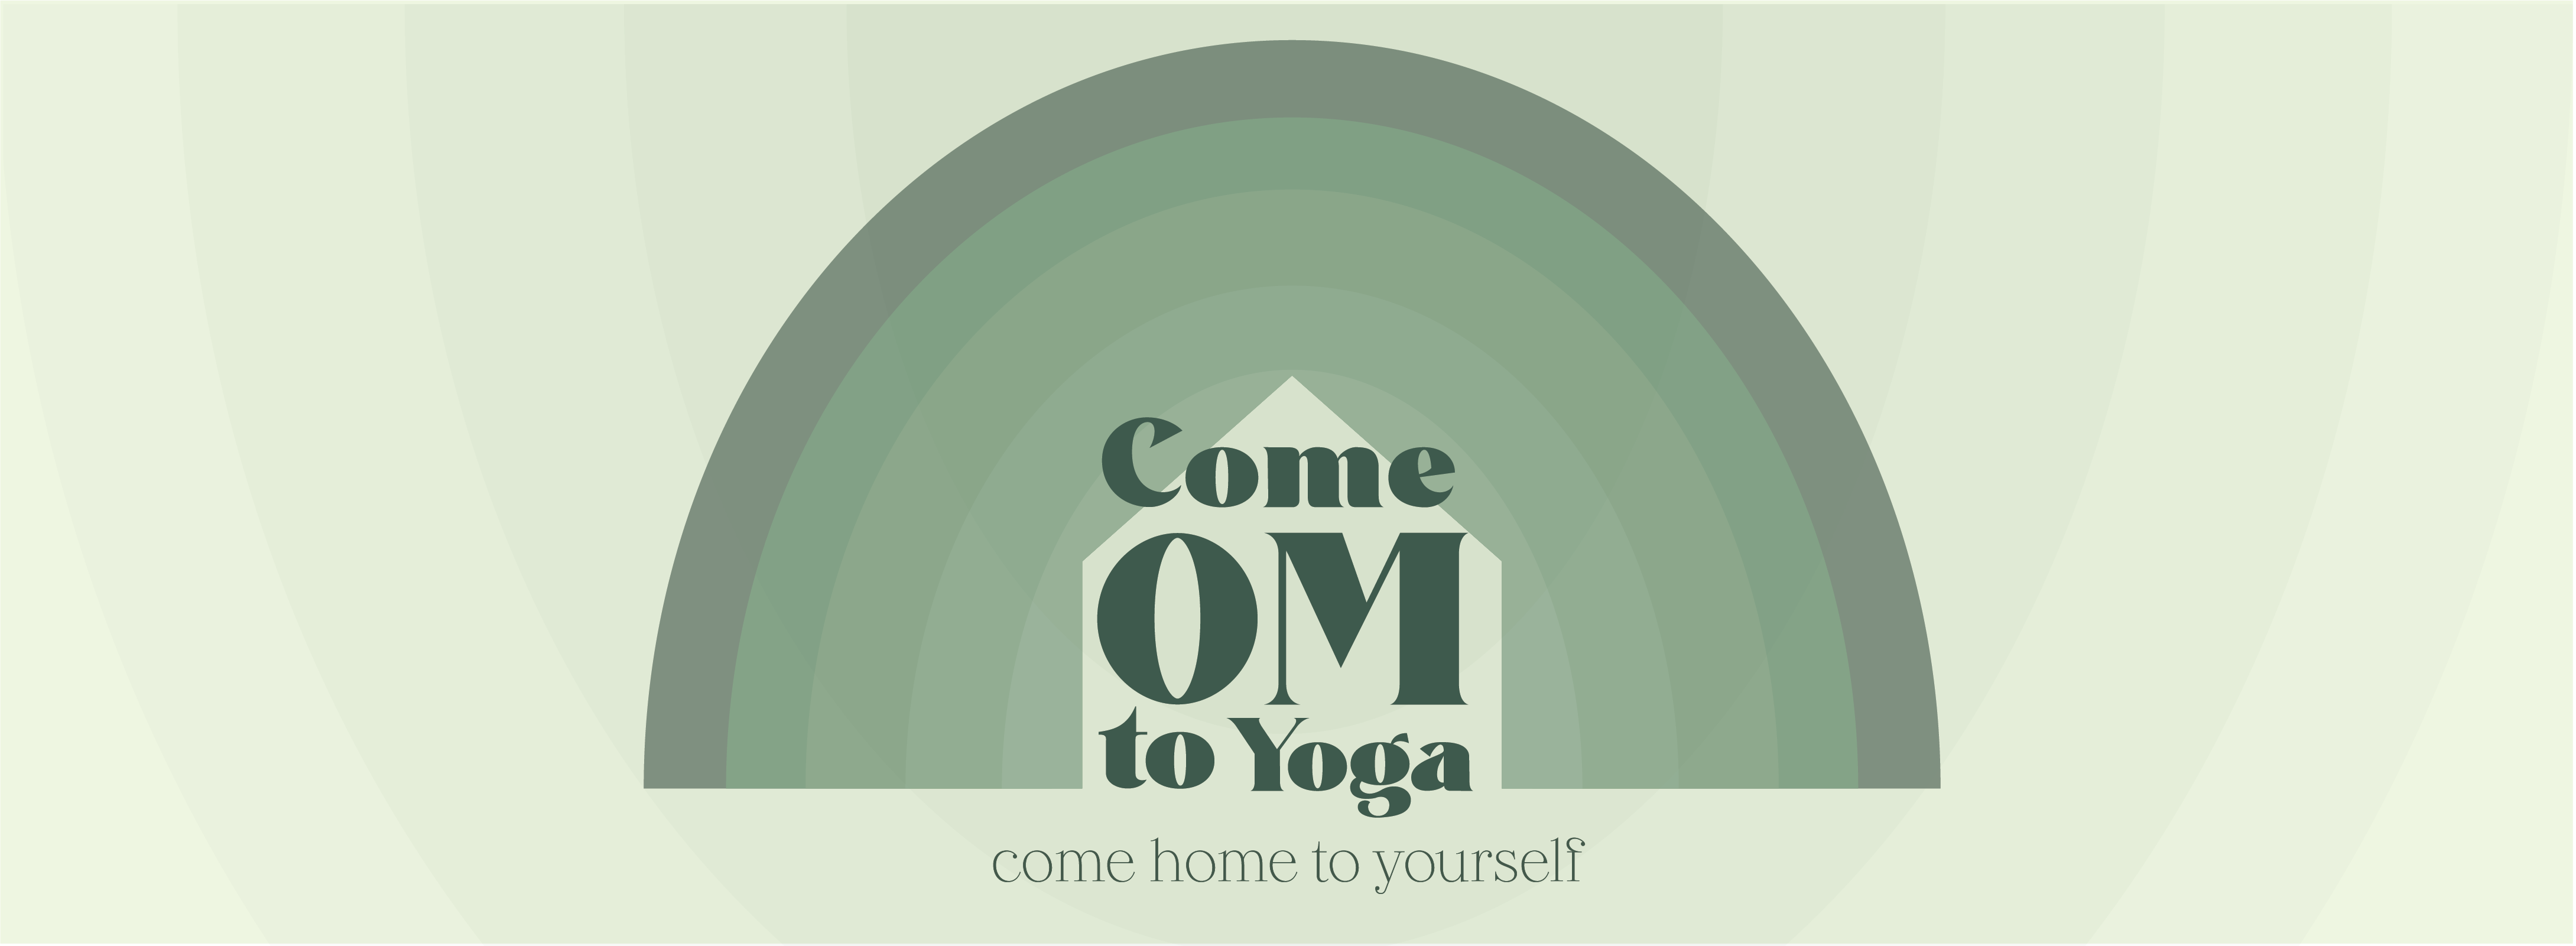 Come Om to Yoga logo